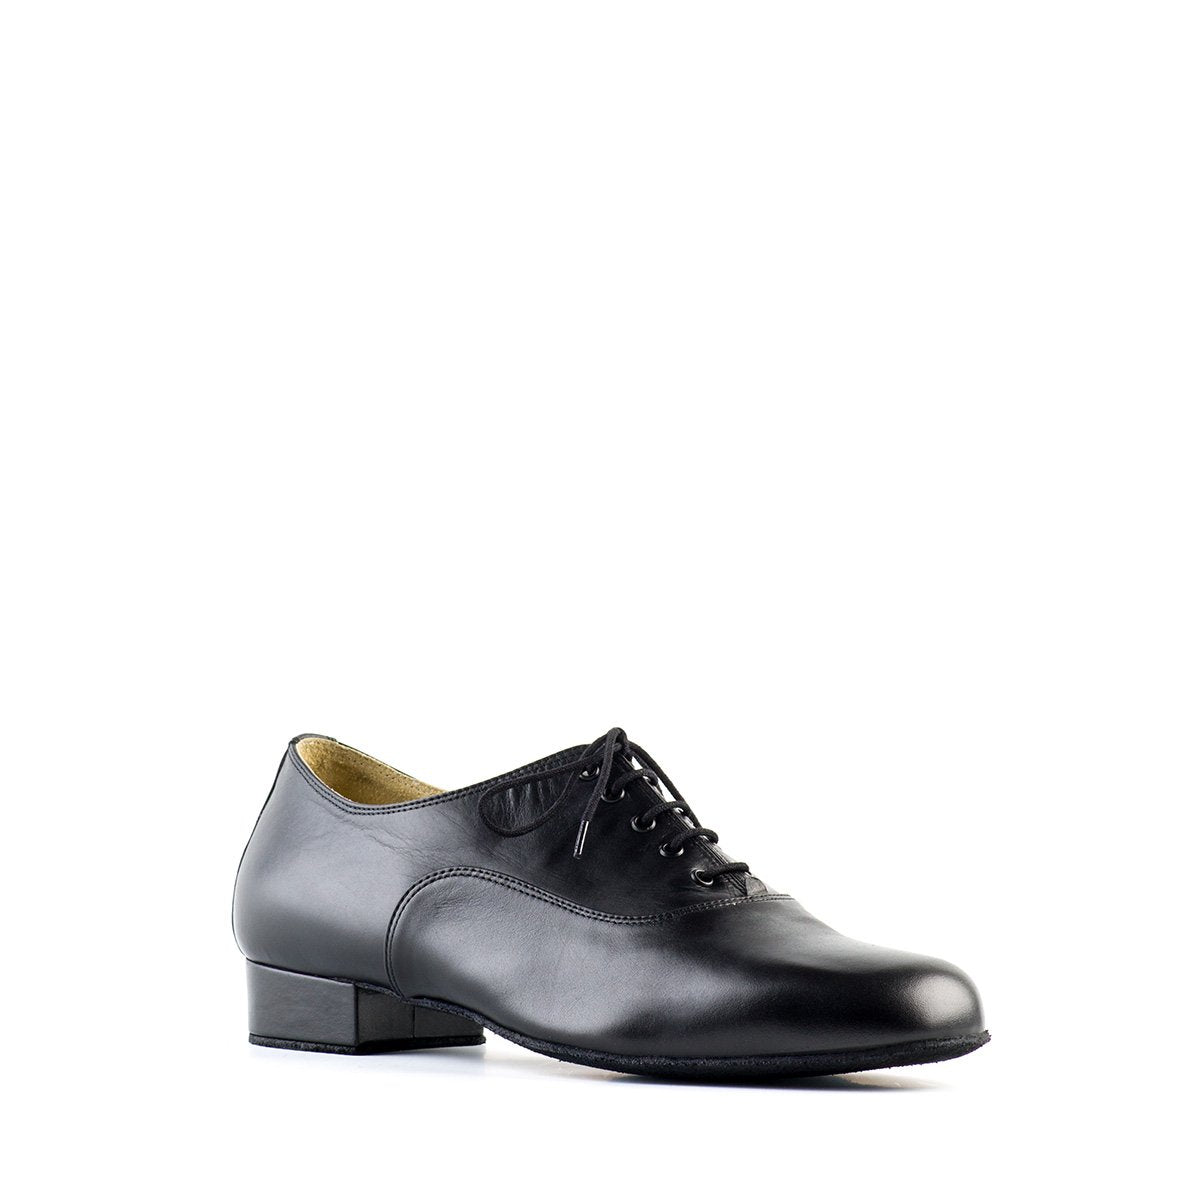 Ballroom dance shoe for men in black leather